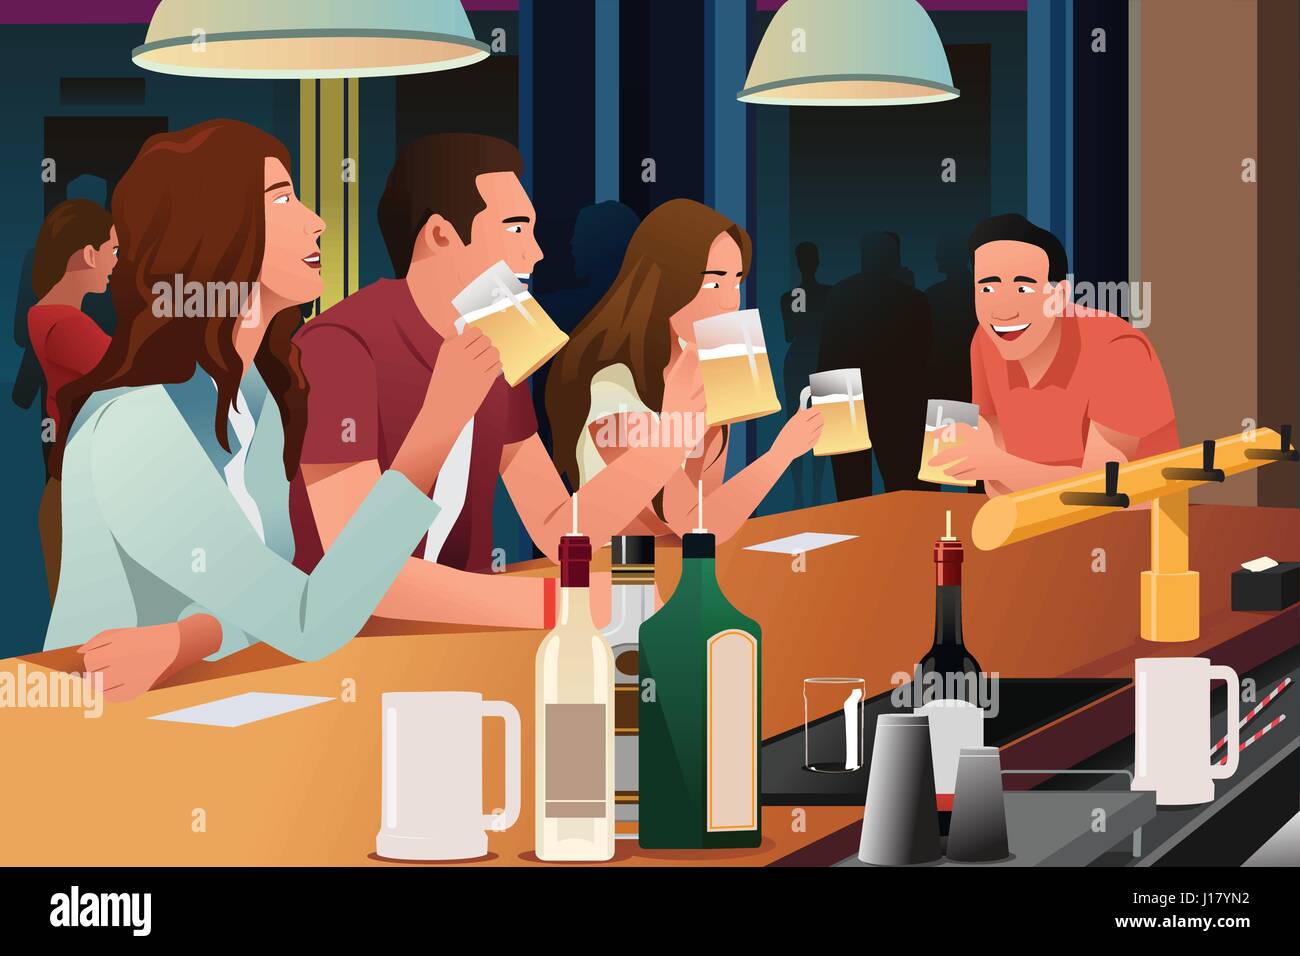 Eine Vektor-Illustration der jungen Leute, die Spaß in einer bar Stock Vektor